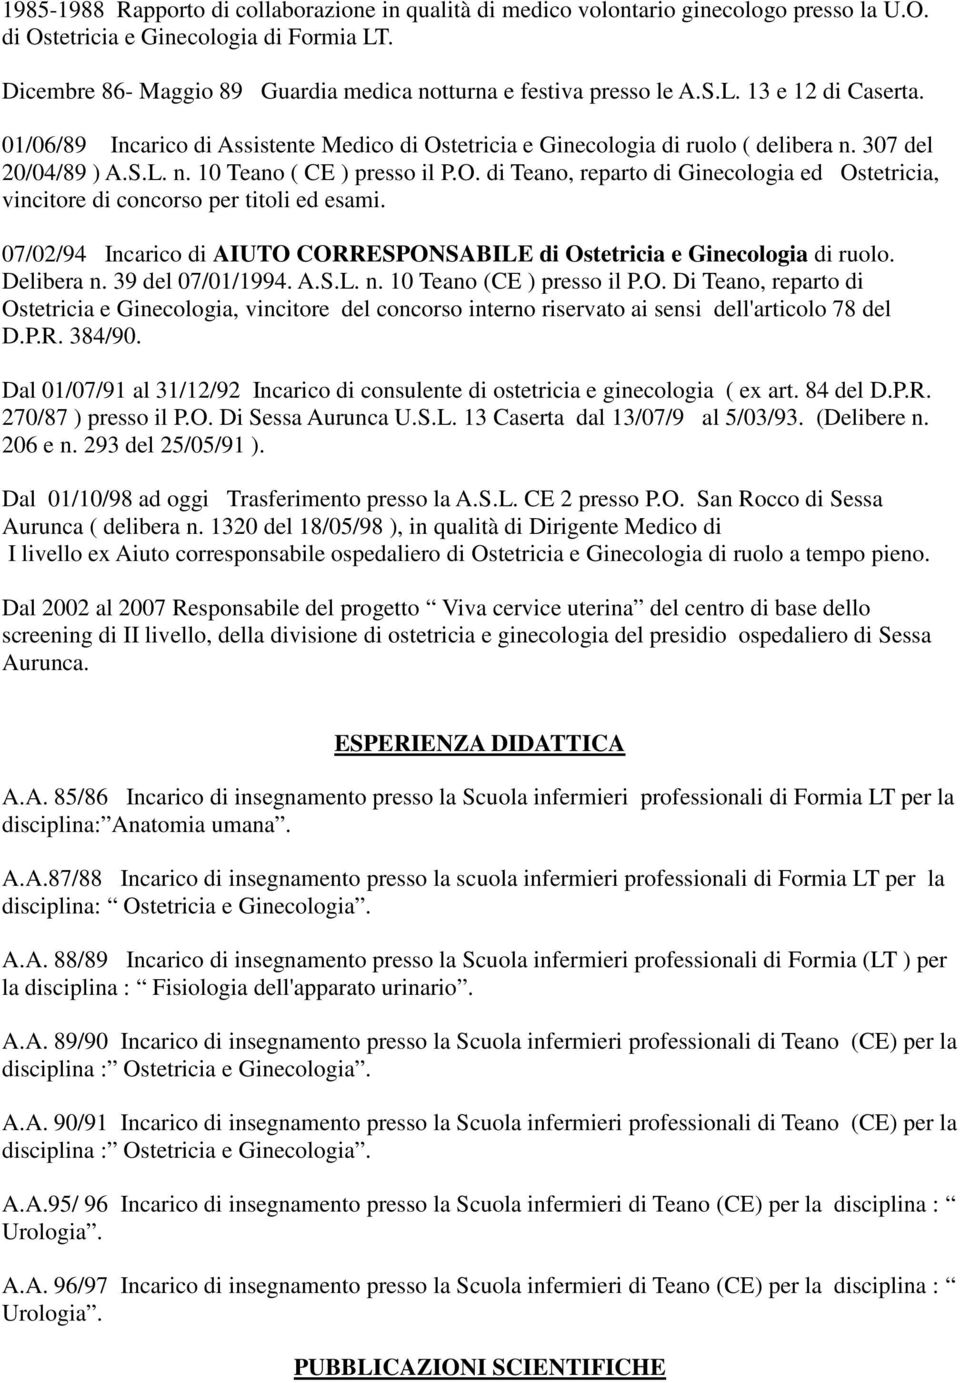 307 del 20/04/89 ) A.S.L. n. 10 Teano ( CE ) presso il P.O. di Teano, reparto di Ginecologia ed Ostetricia, vincitore di concorso per titoli ed esami.